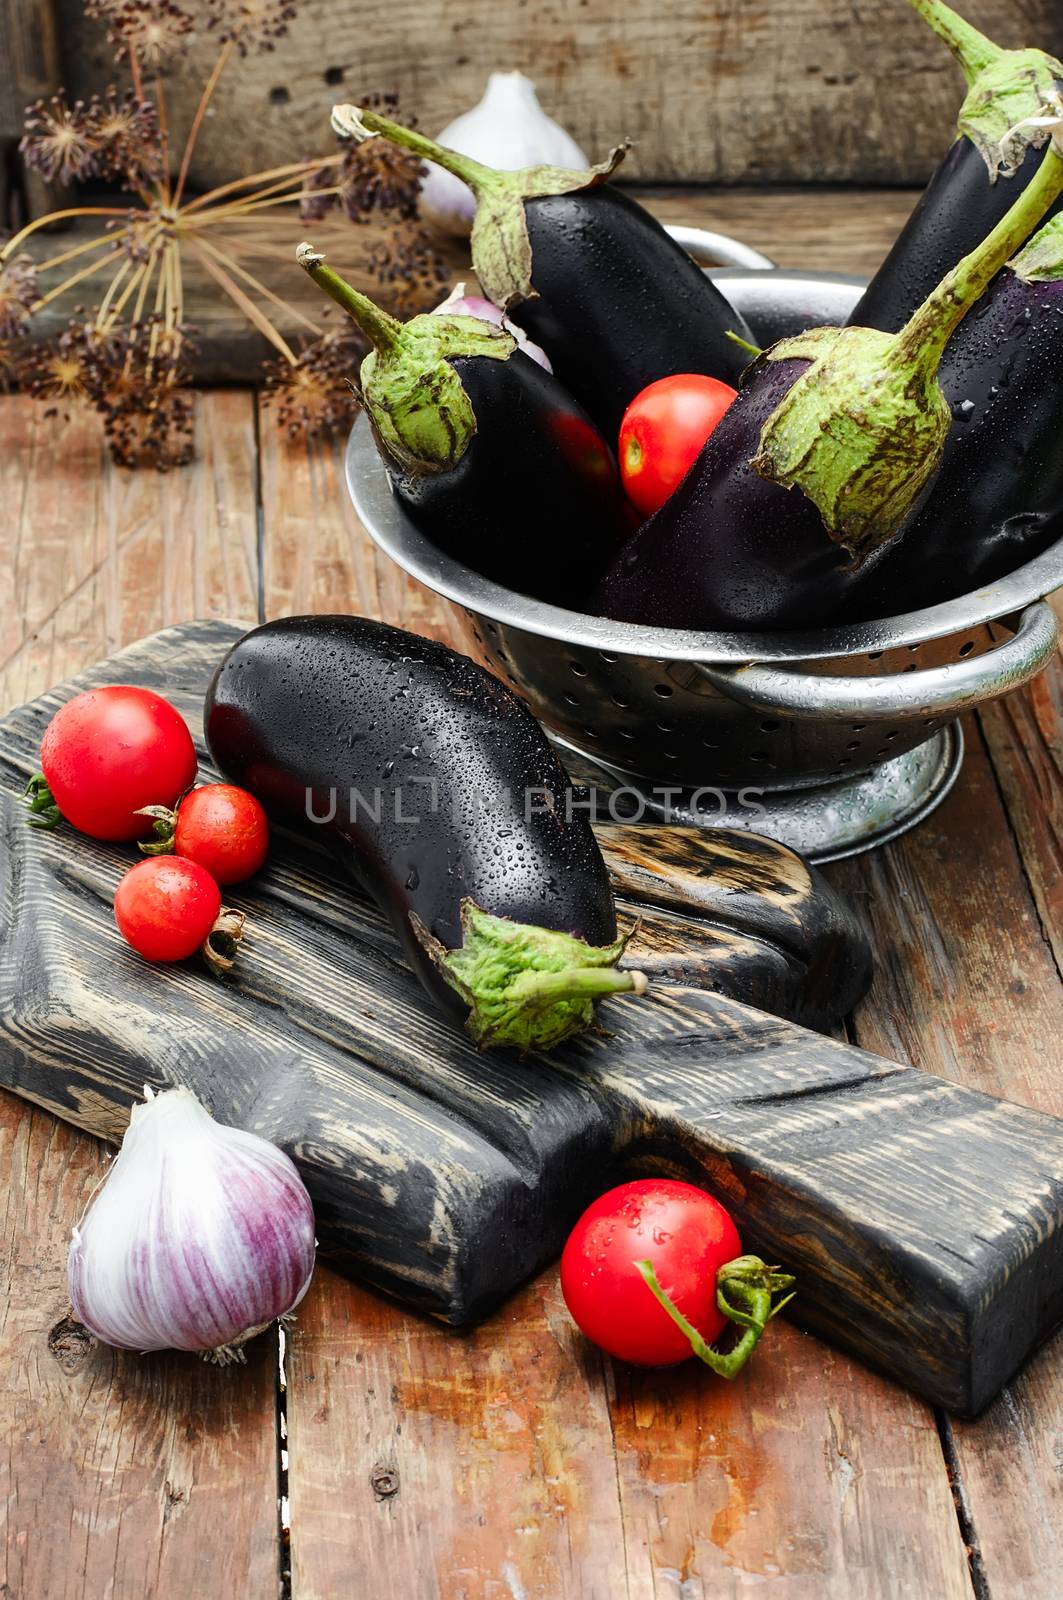 Summer crop of aubergine by LMykola